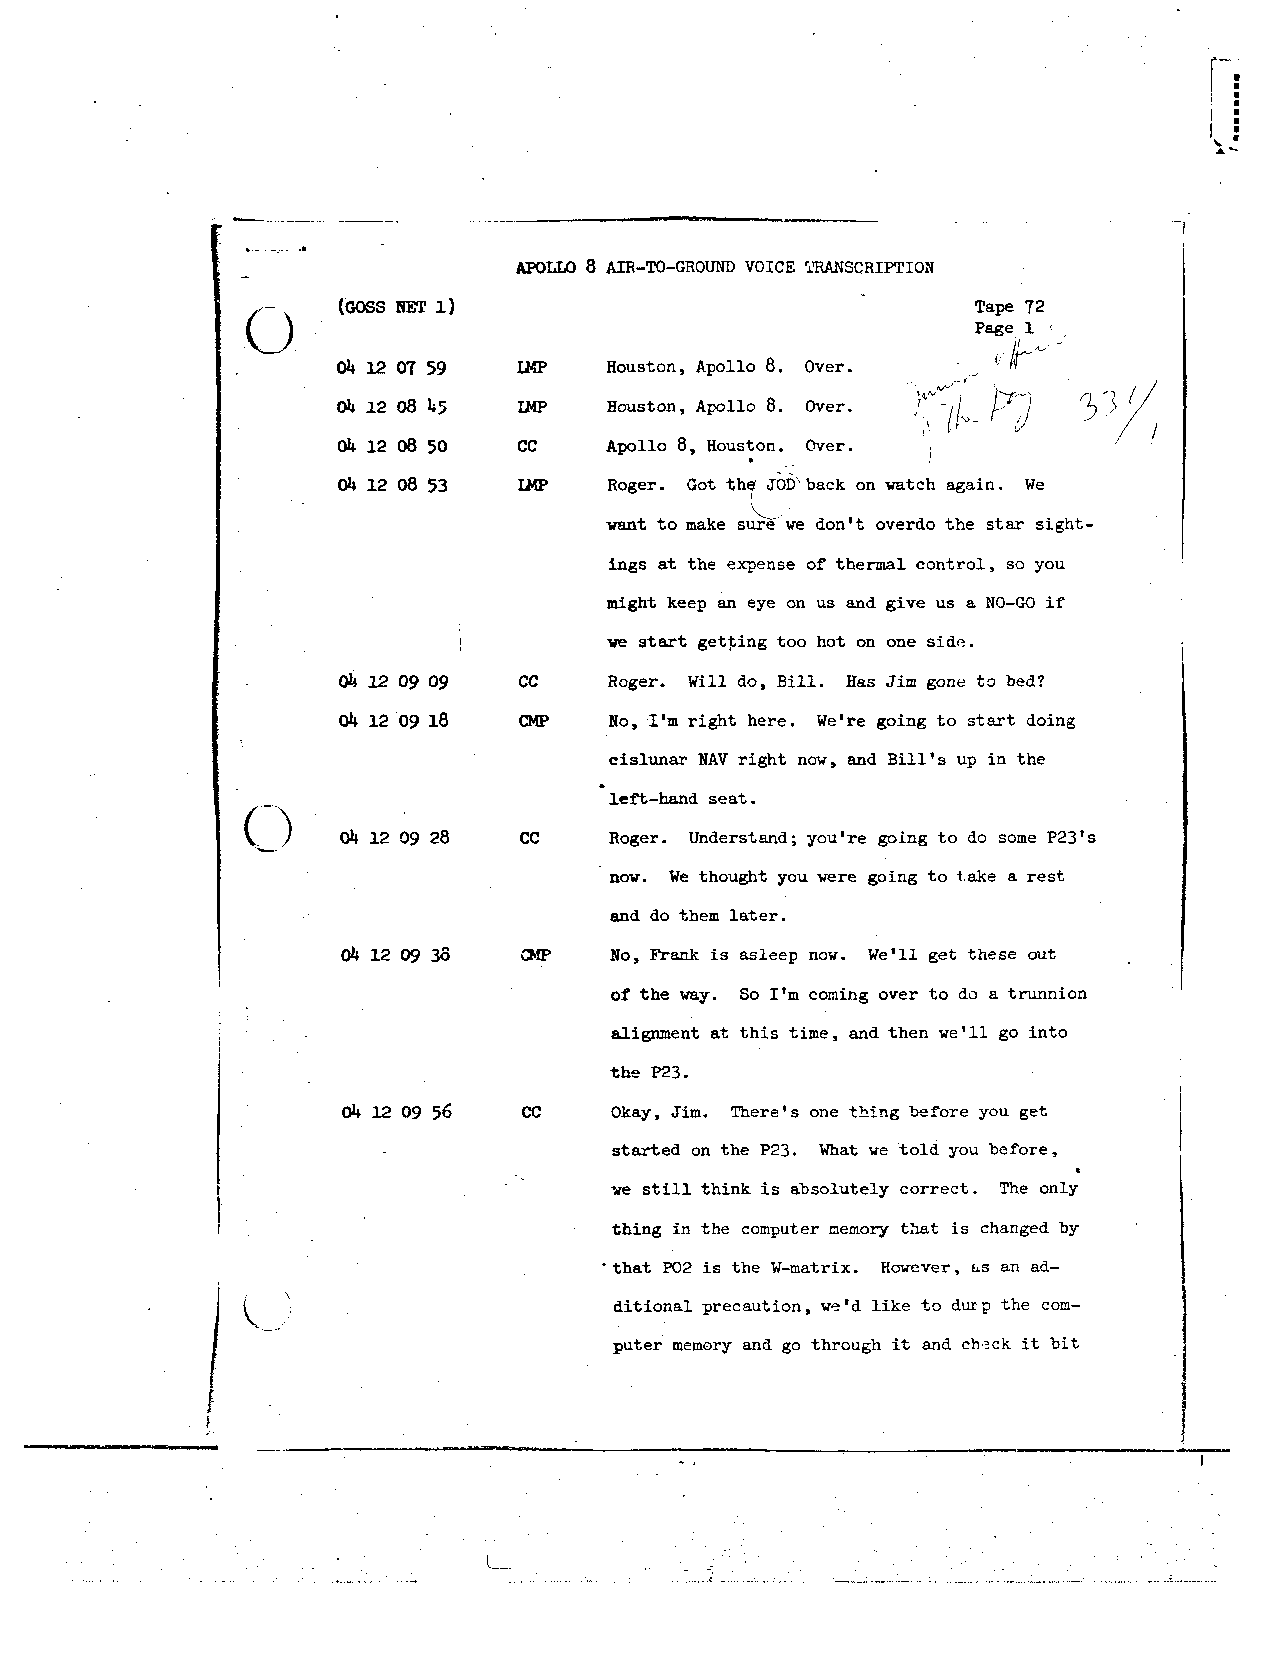 Page 574 of Apollo 8’s original transcript